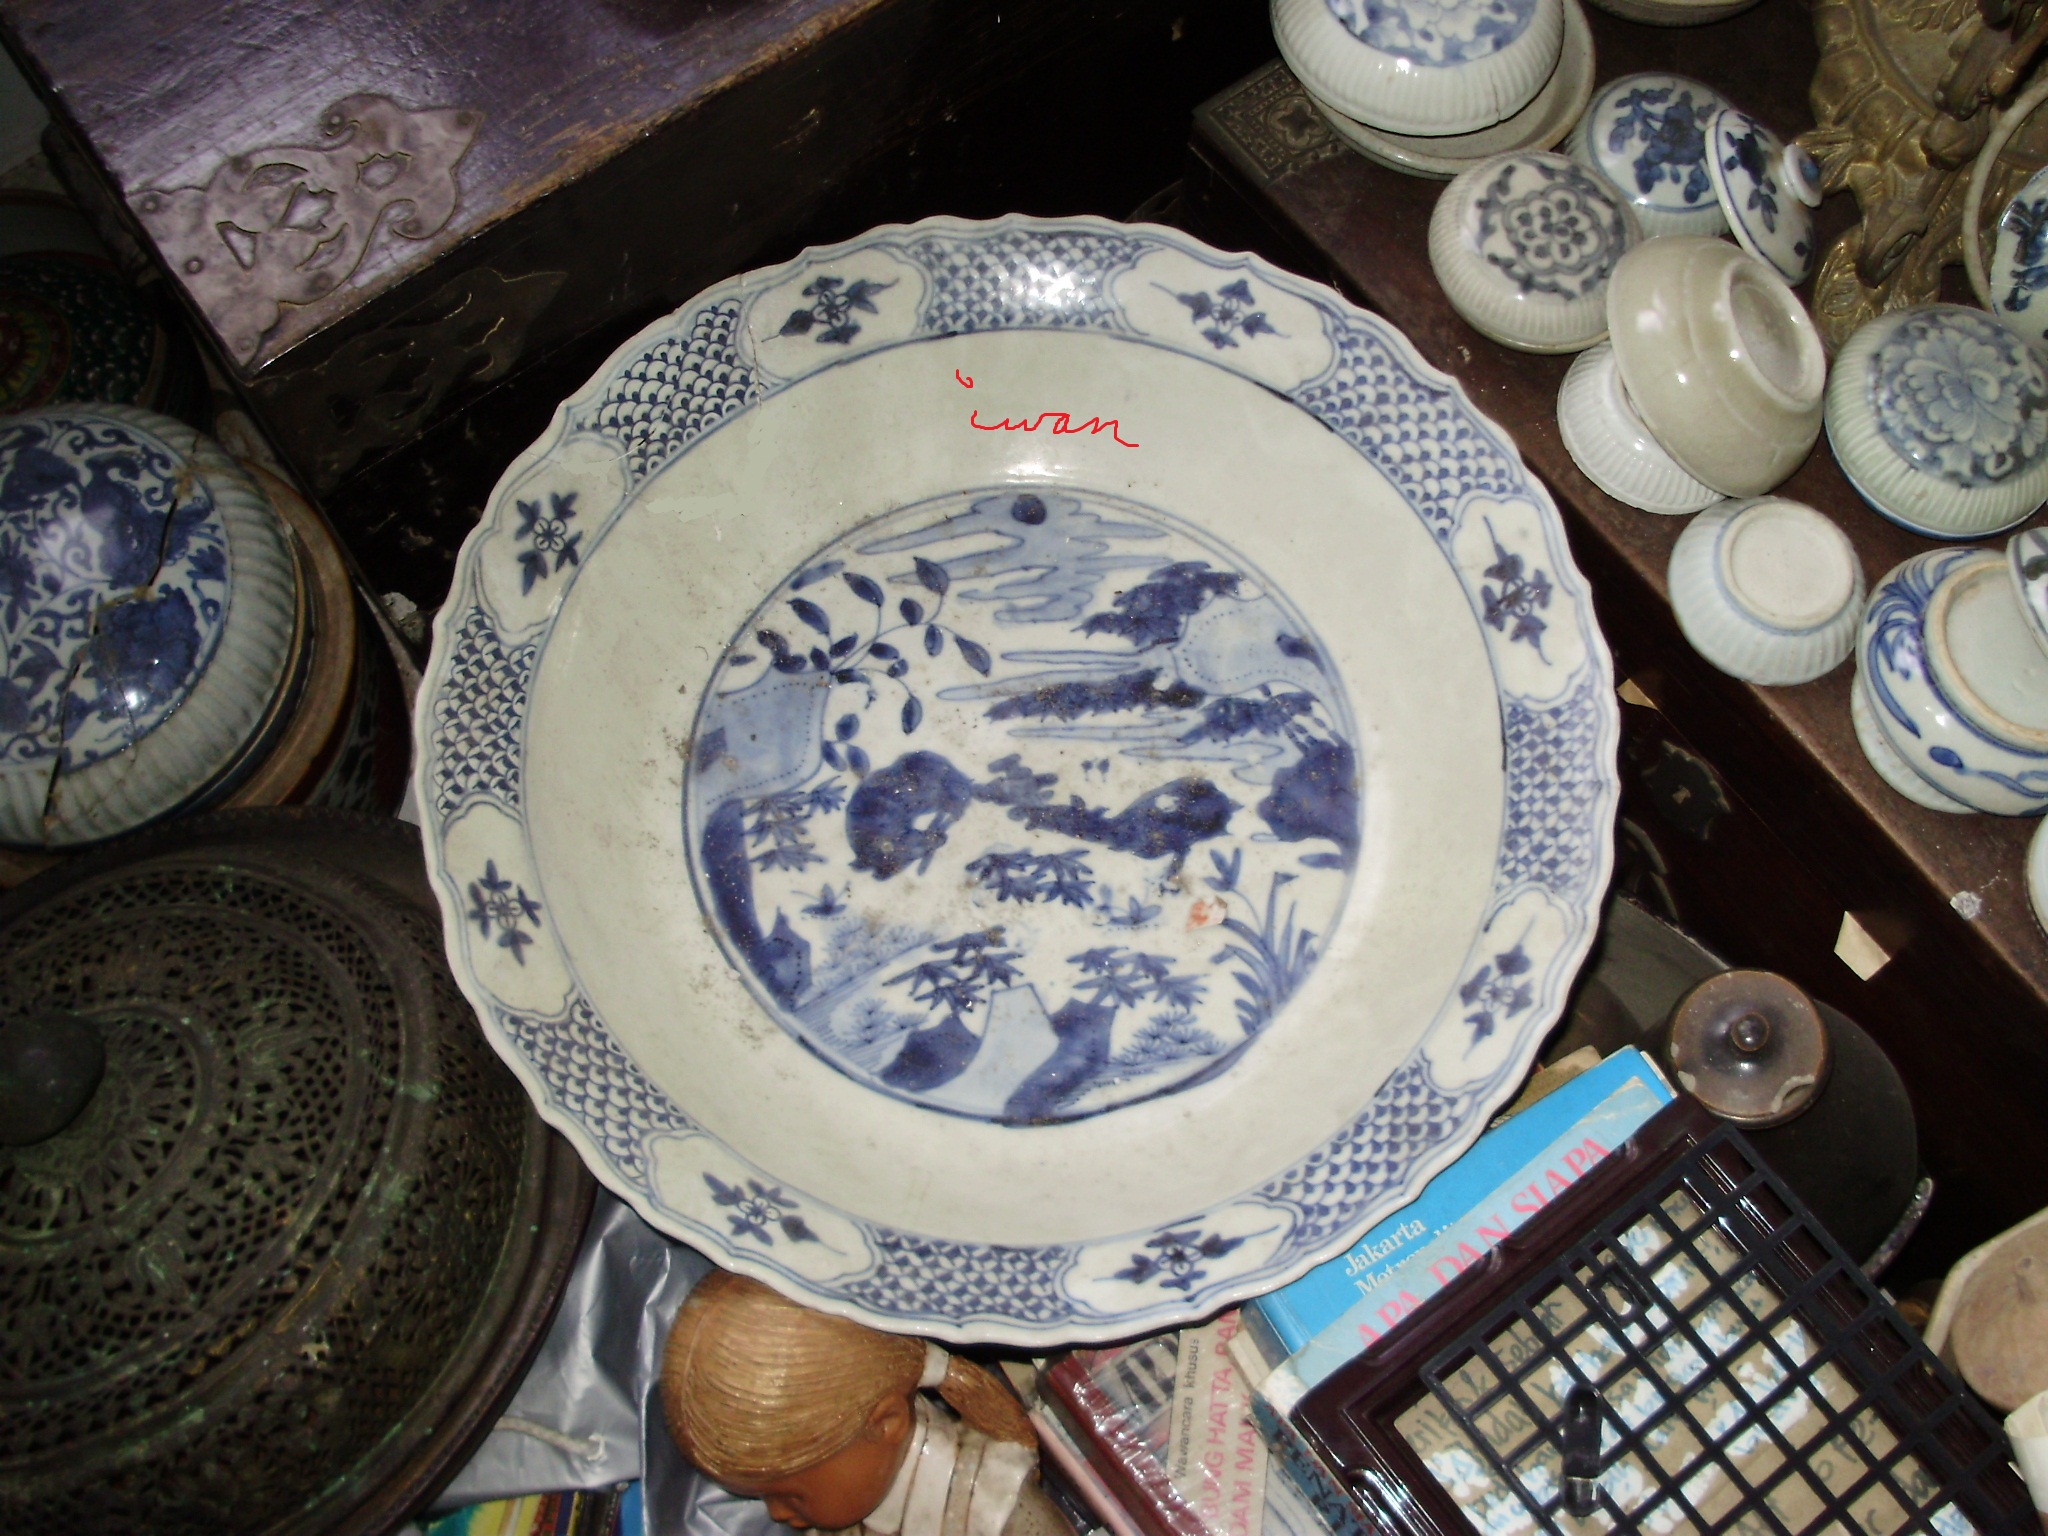 pameran keramik  tiongkok langka Driwancybermuseum s Blog